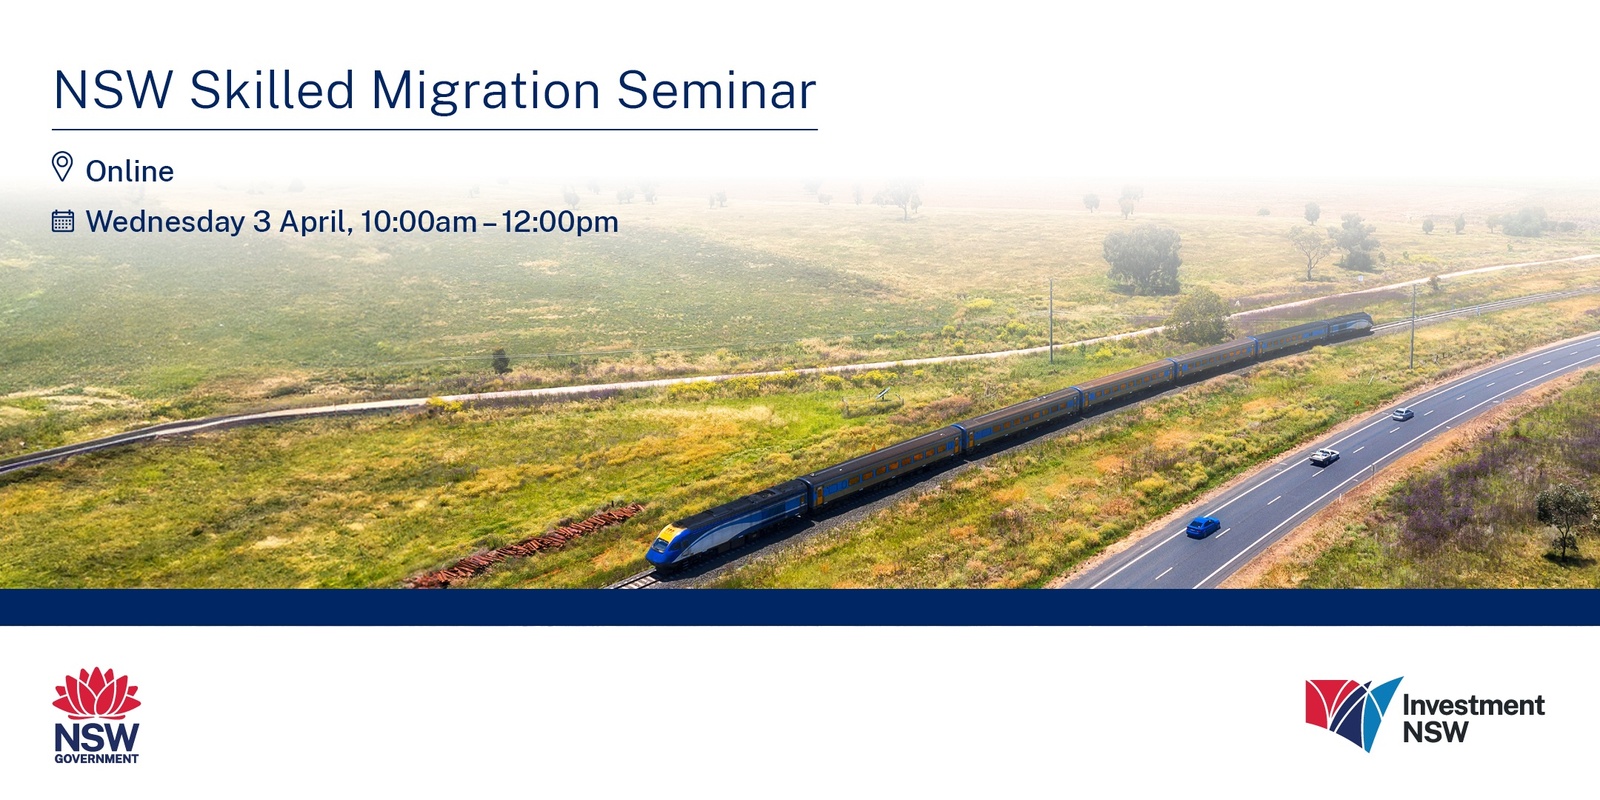 Banner image for Regional Skilled Migration event - Online Seminar